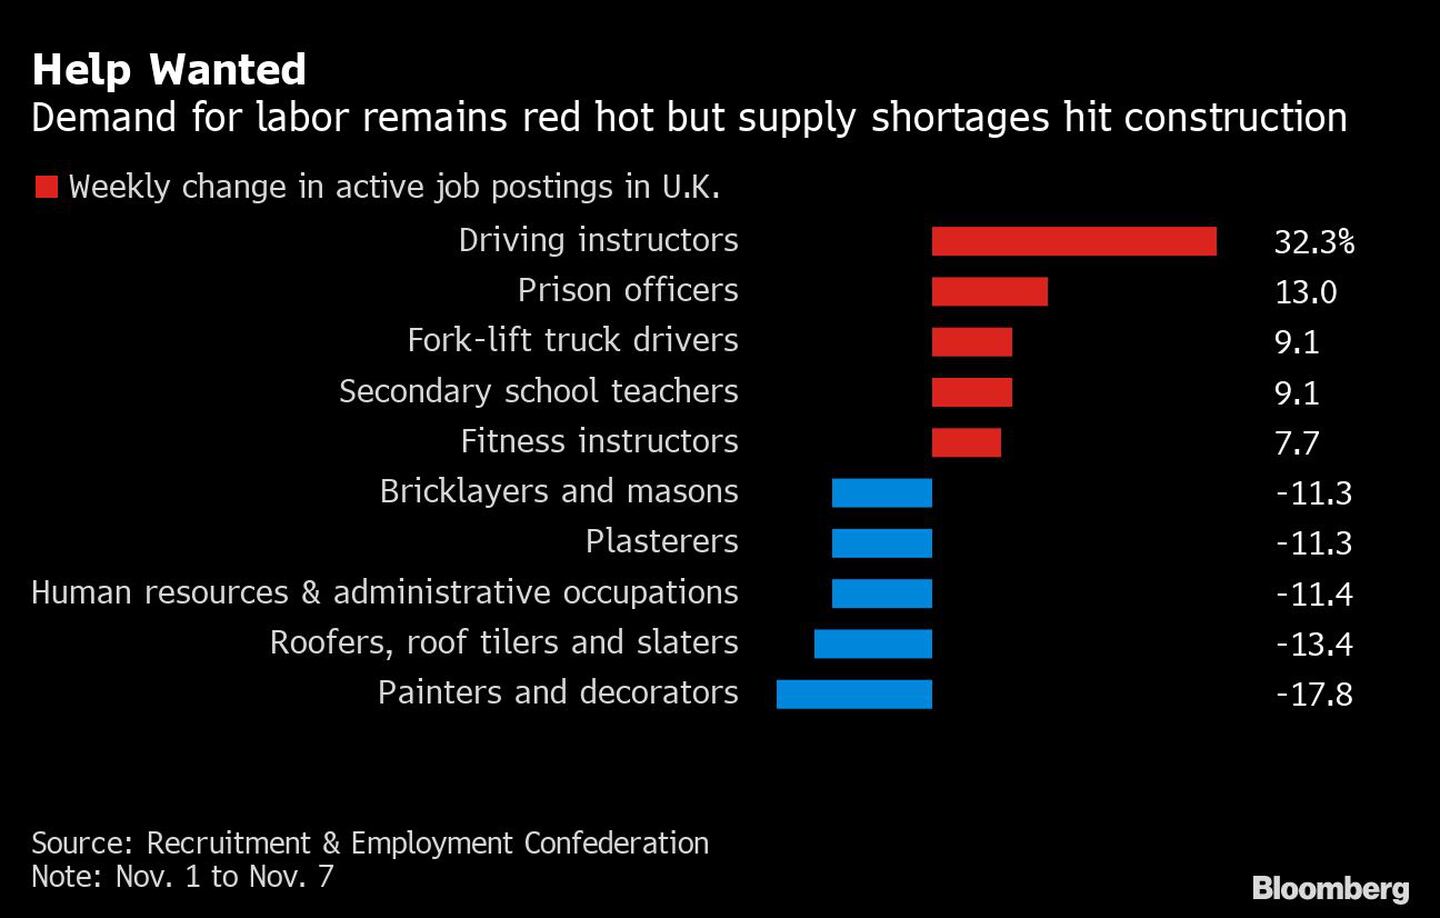 Se busca ayuda: La demanda de mano de obra sigue al rojo vivo, pero la escasez de oferta afecta a la construccióndfd